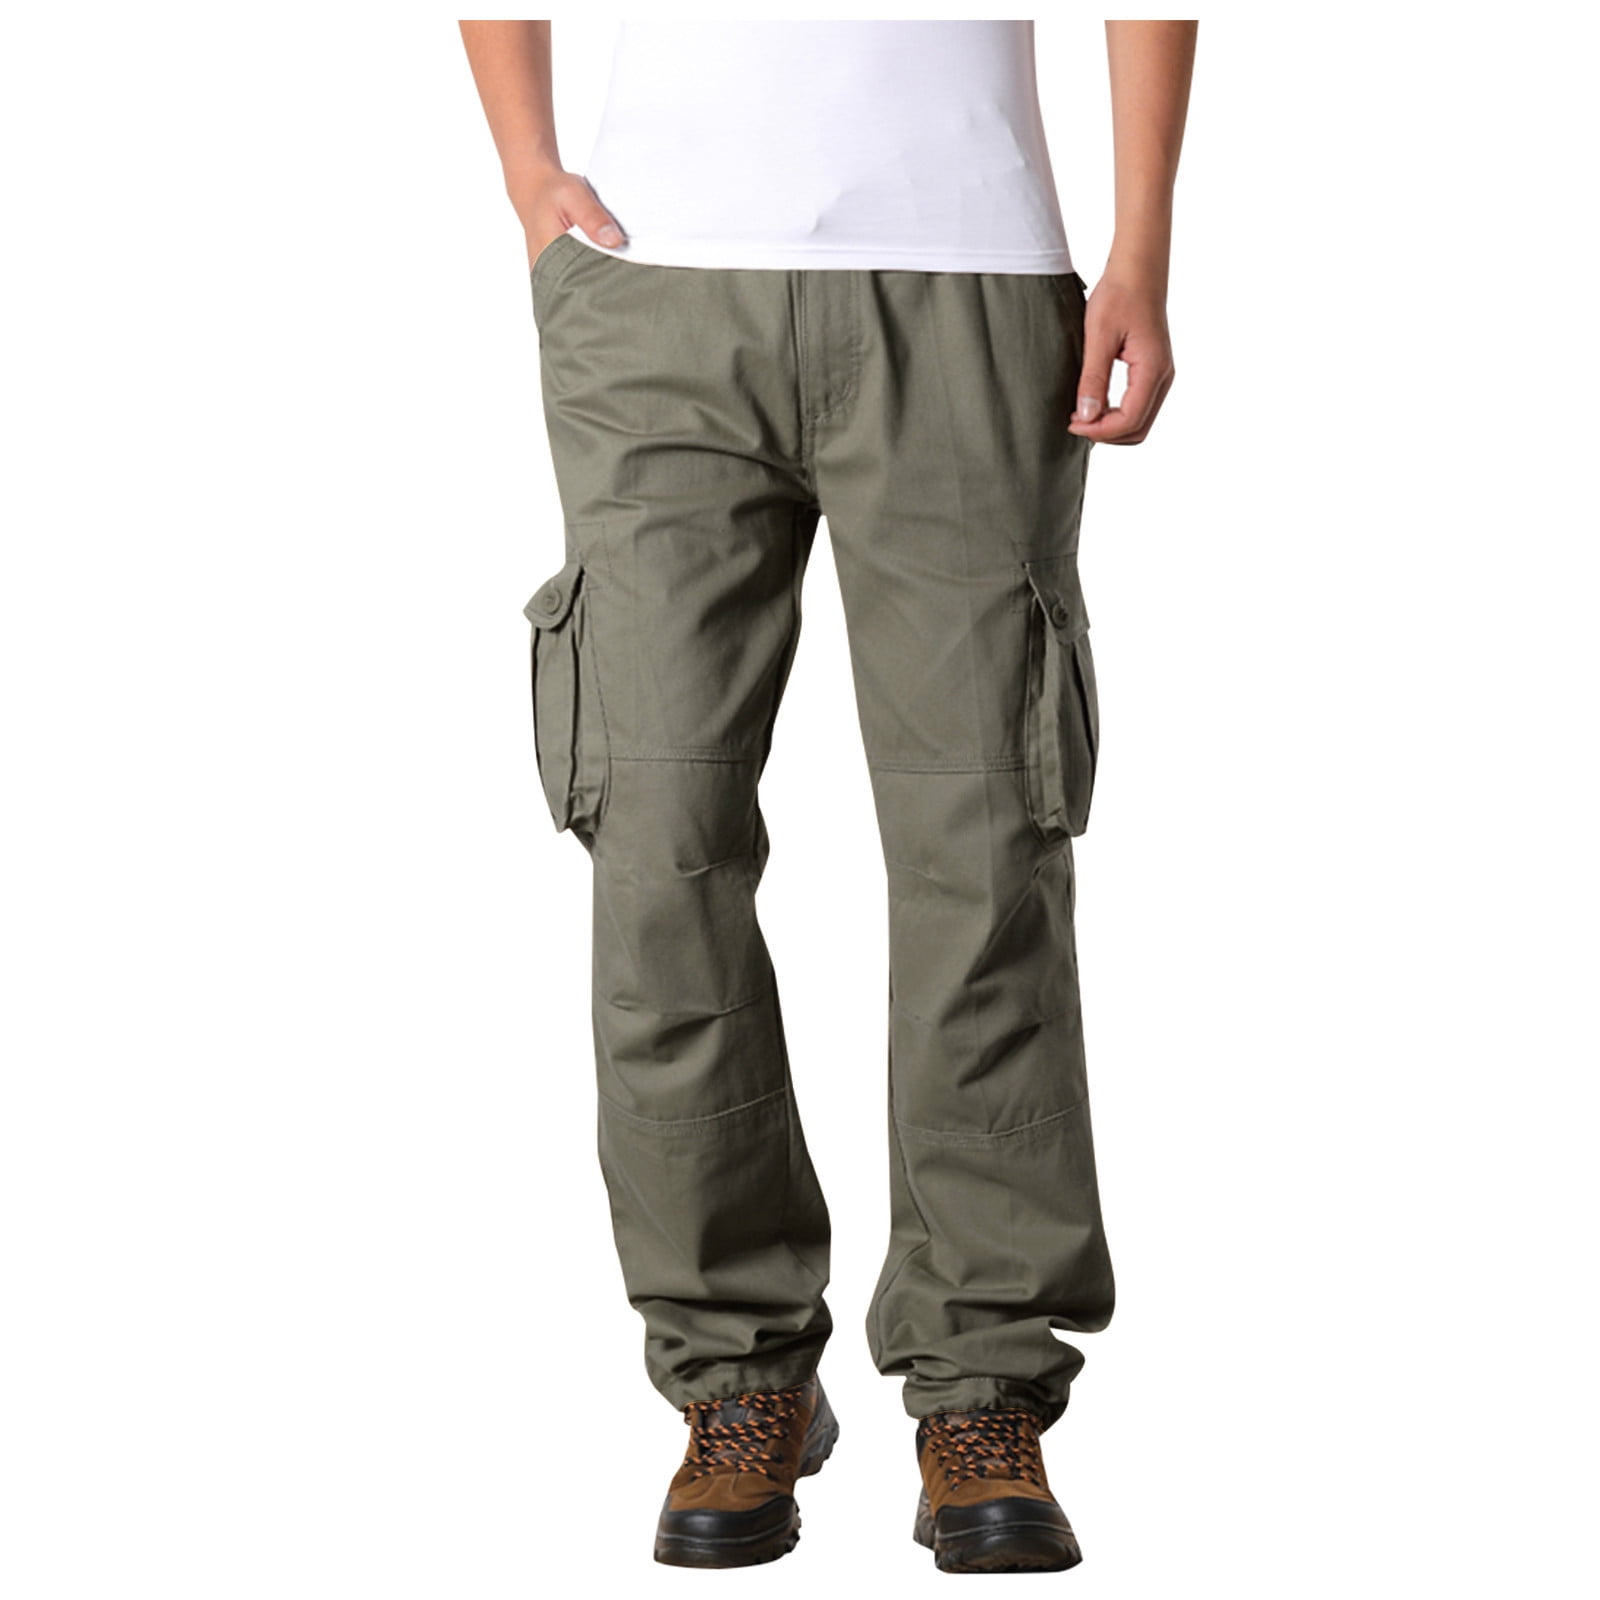 Ace Cargo Men's Pants - Green | Levi's® US